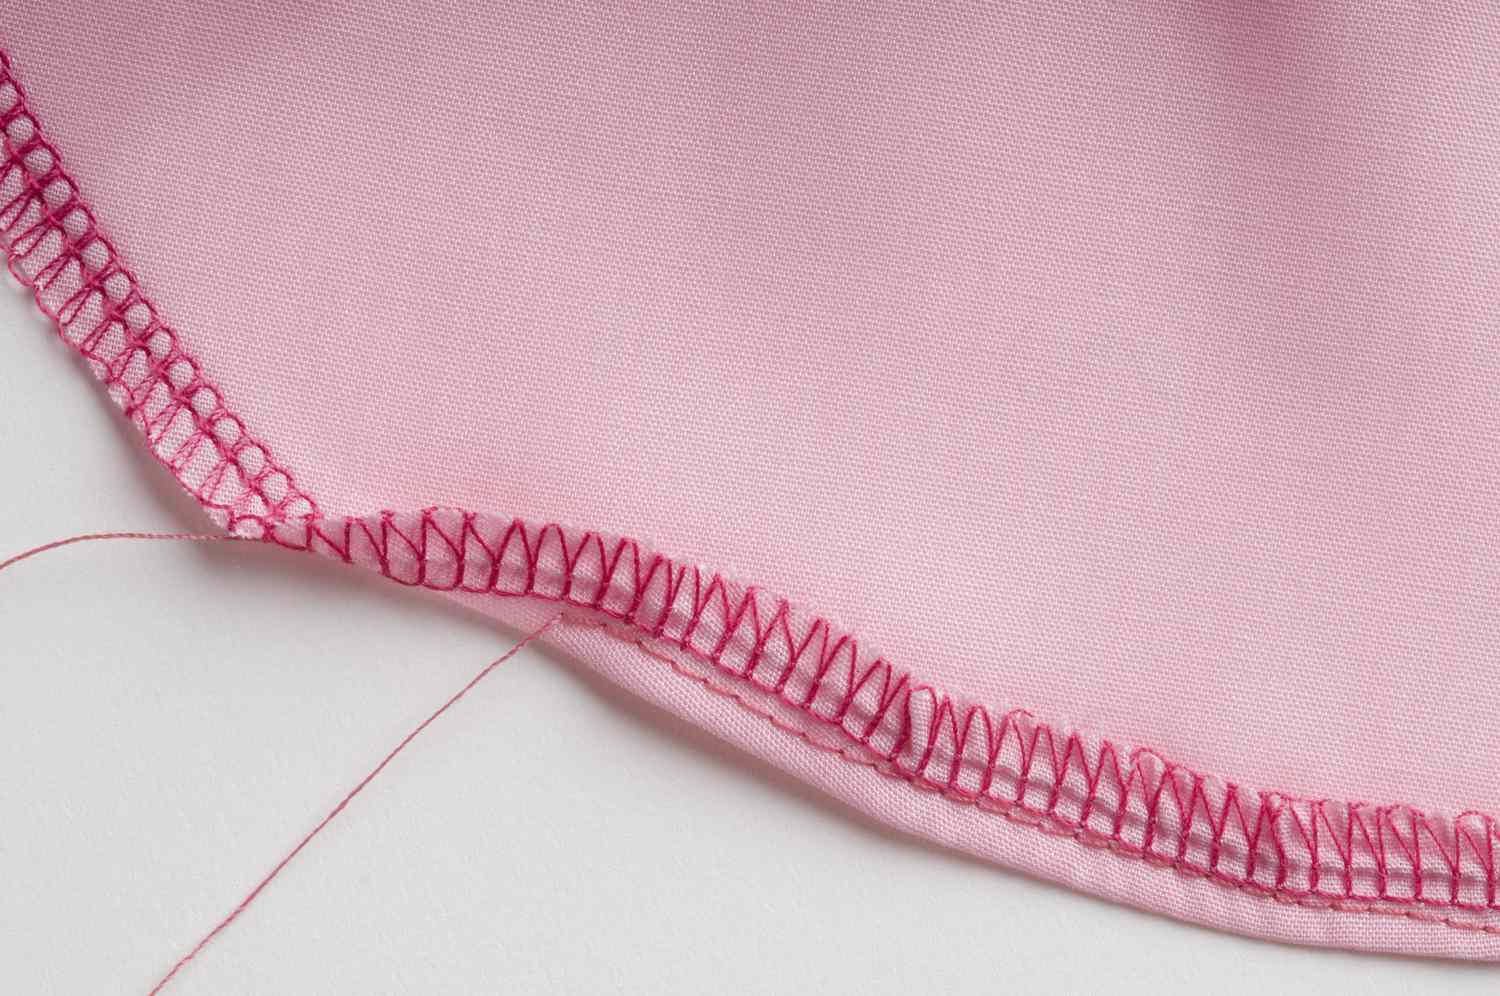 粉红色织物弯曲边的包缝和直缝